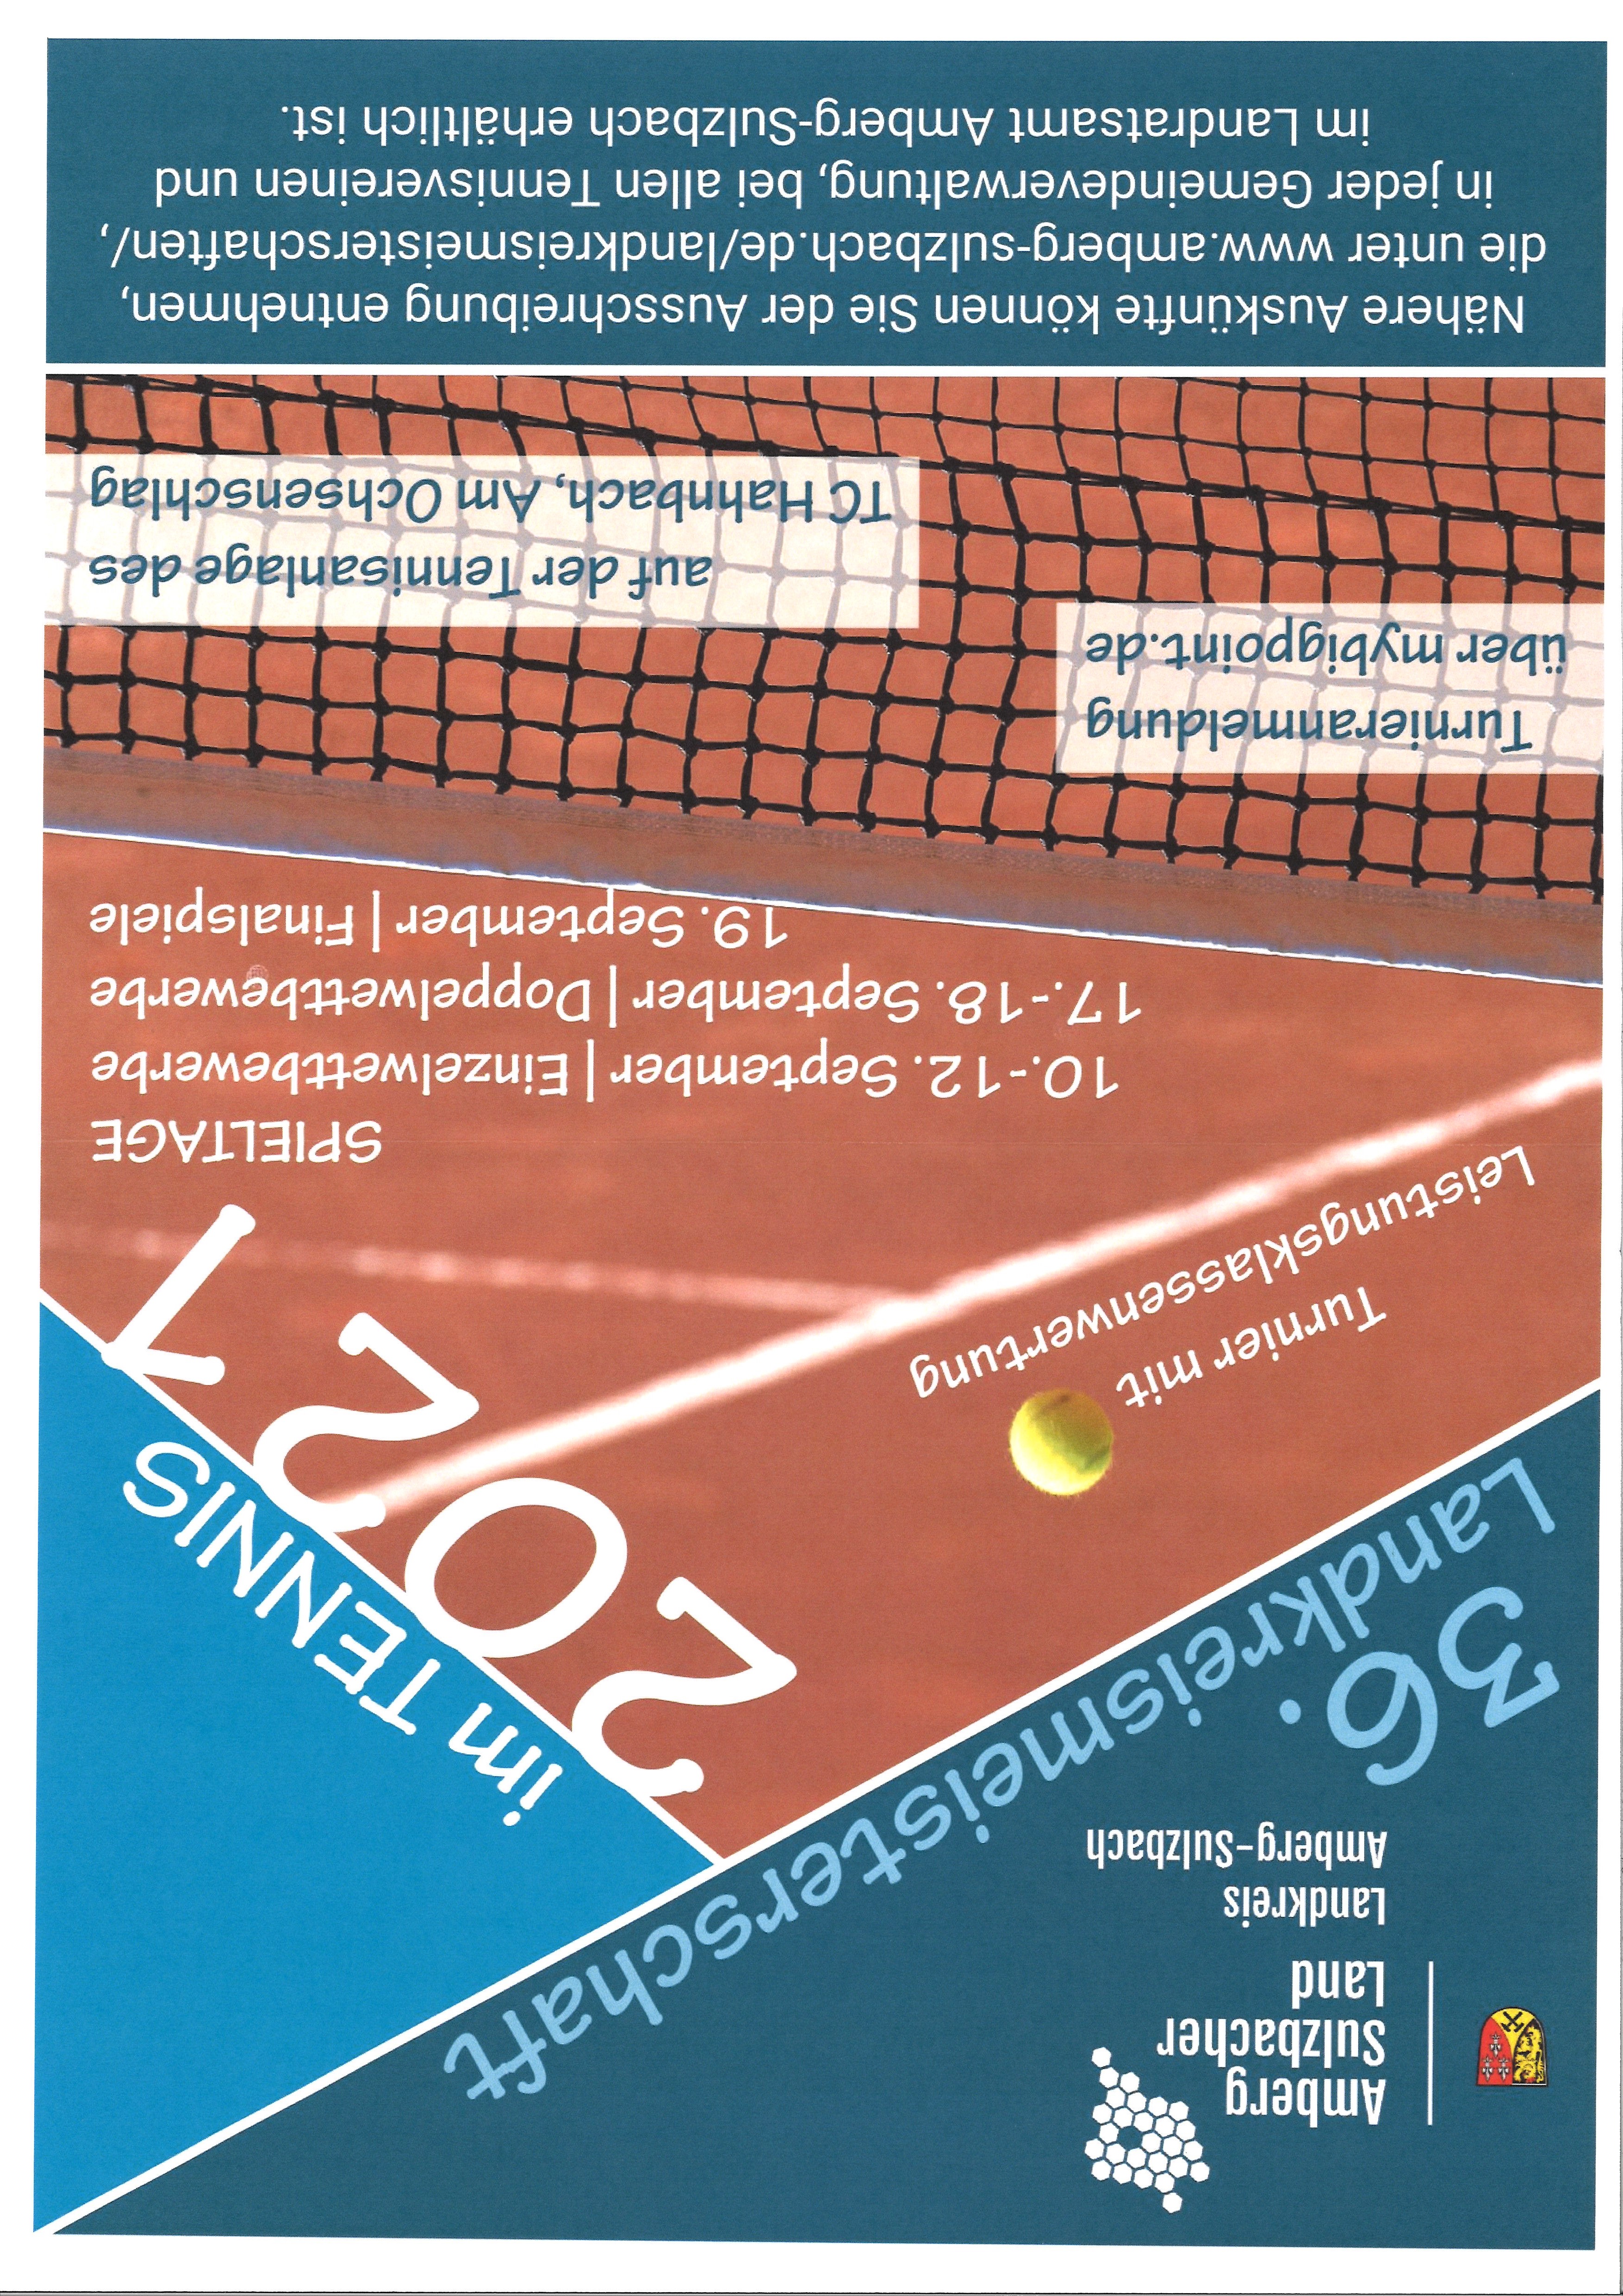 36. Landkreismeisterschaft im Tennis (LRA Am-Sul)